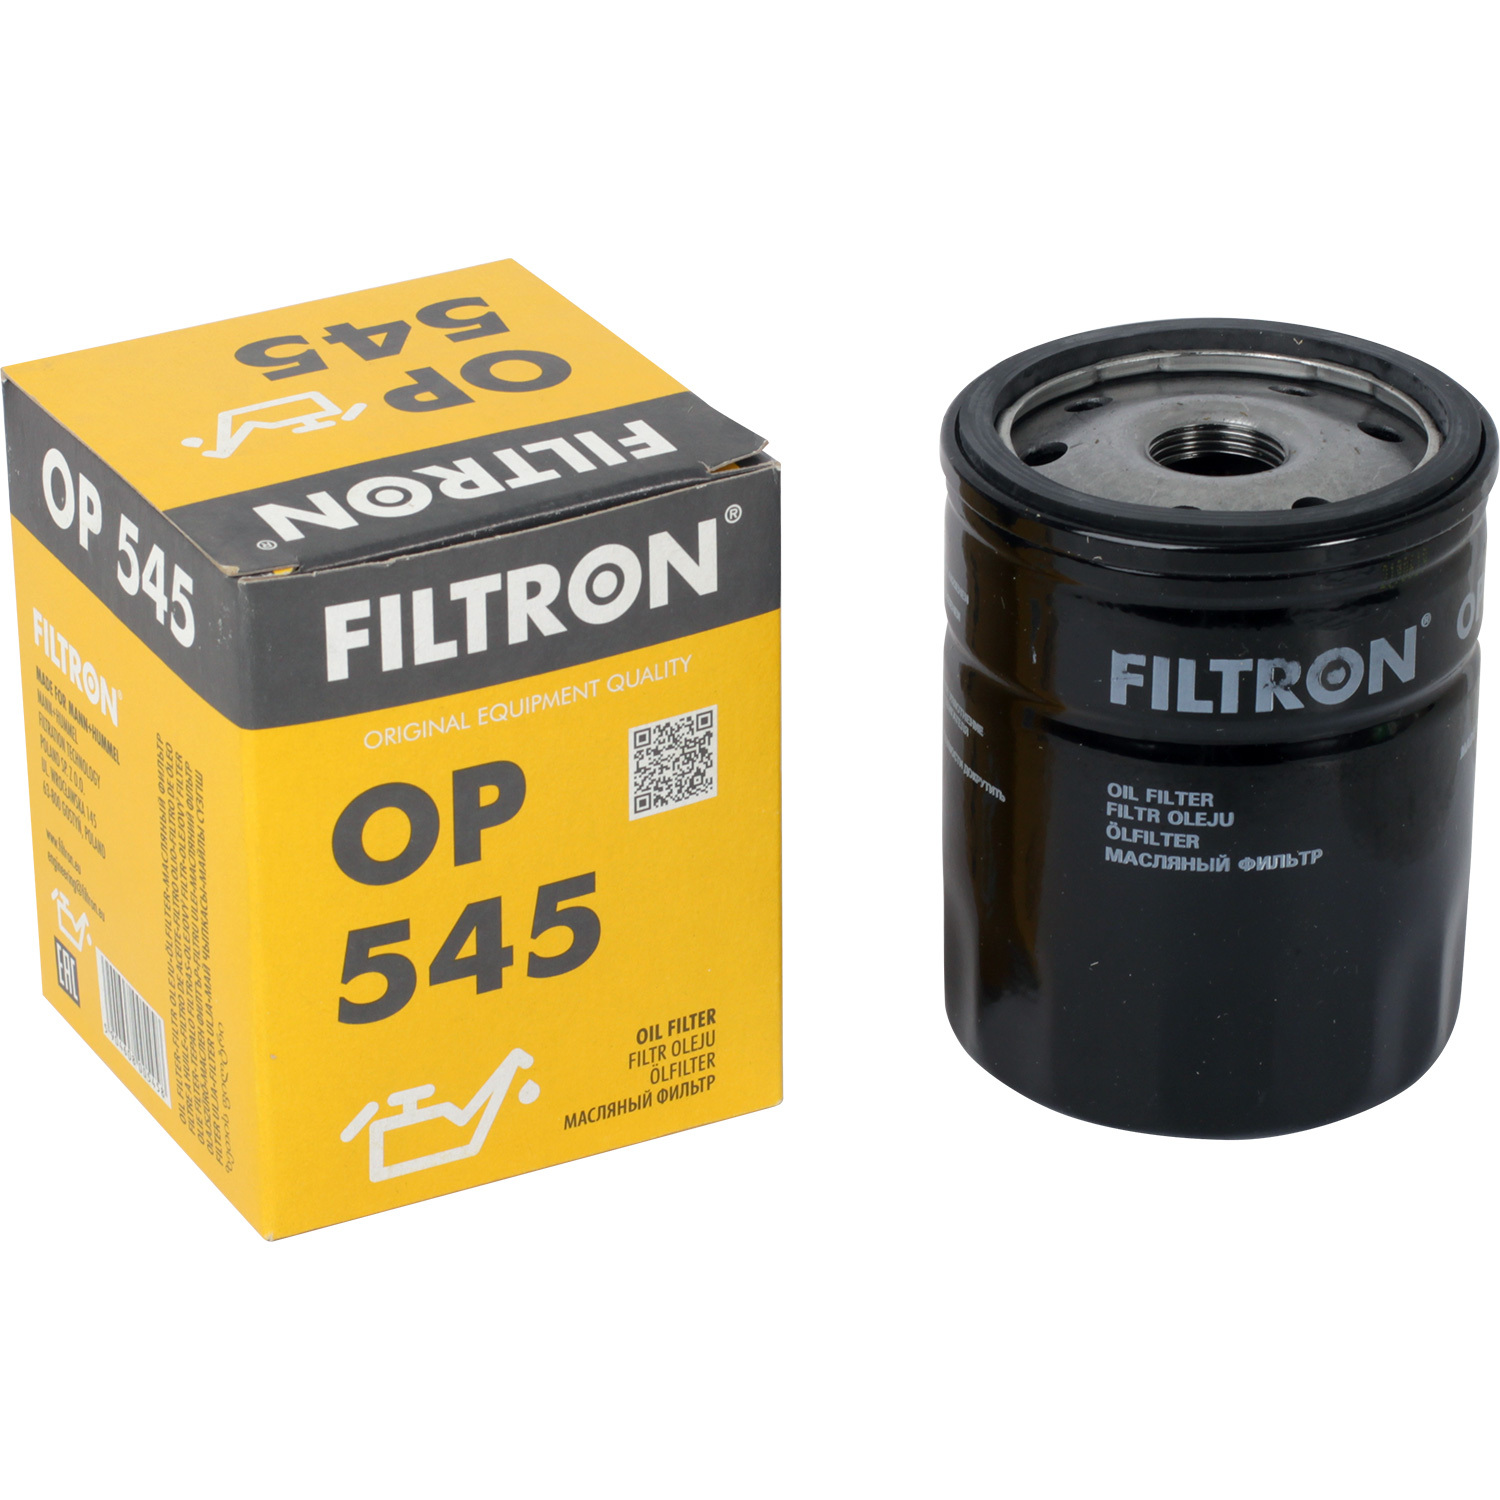 Фильтры Filtron Фильтр масляный Filtron OP545 фильтры filtron фильтр масляный filtron op617